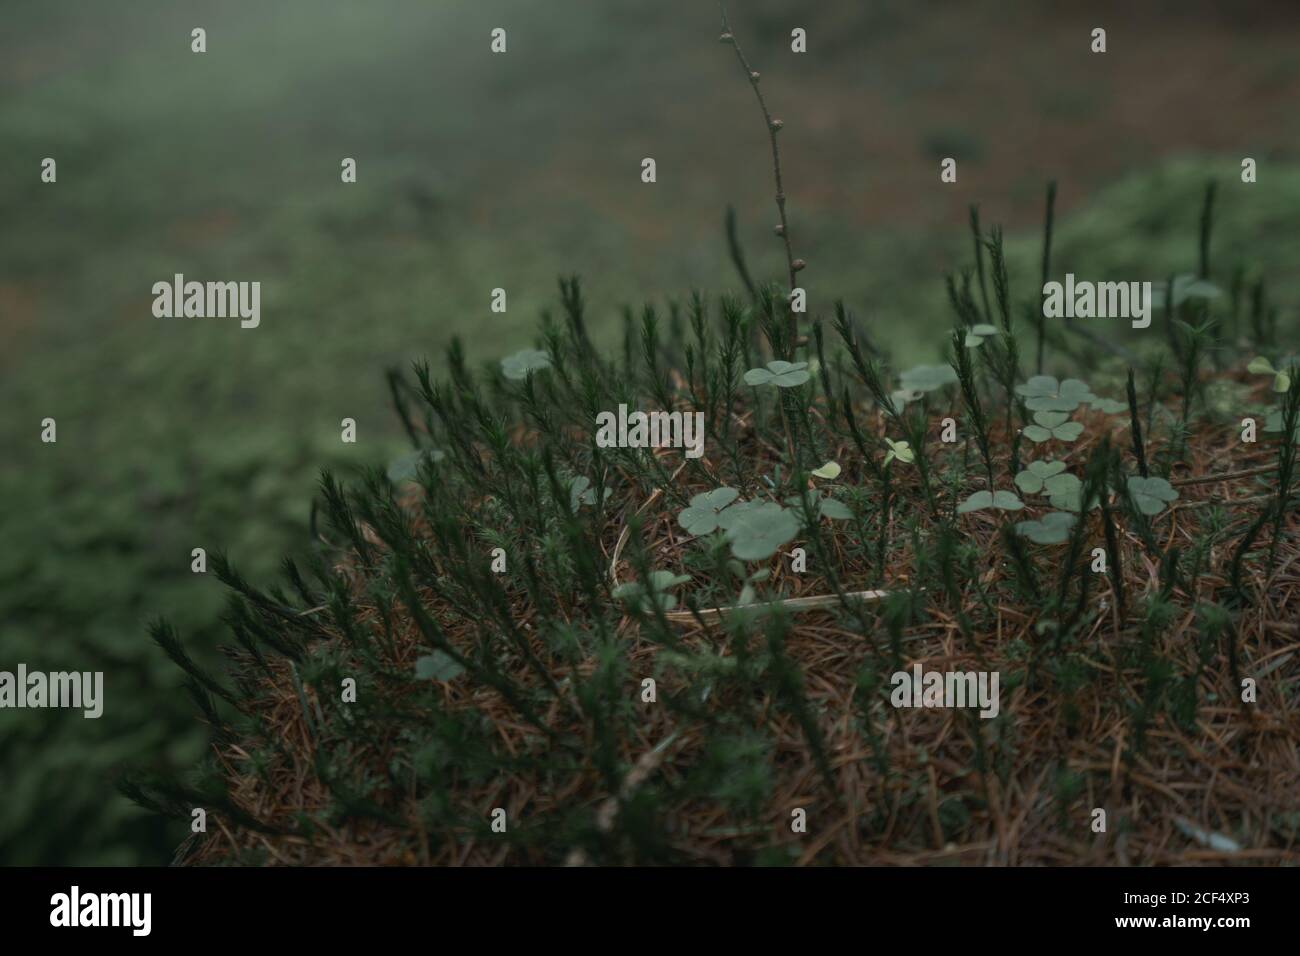 Junge grüne Sprossen von Klee und Schachtelhalm Pflanzen wachsen auf Brauner Bummock im Waldpark im Frühjahr in Nordirland Stockfoto